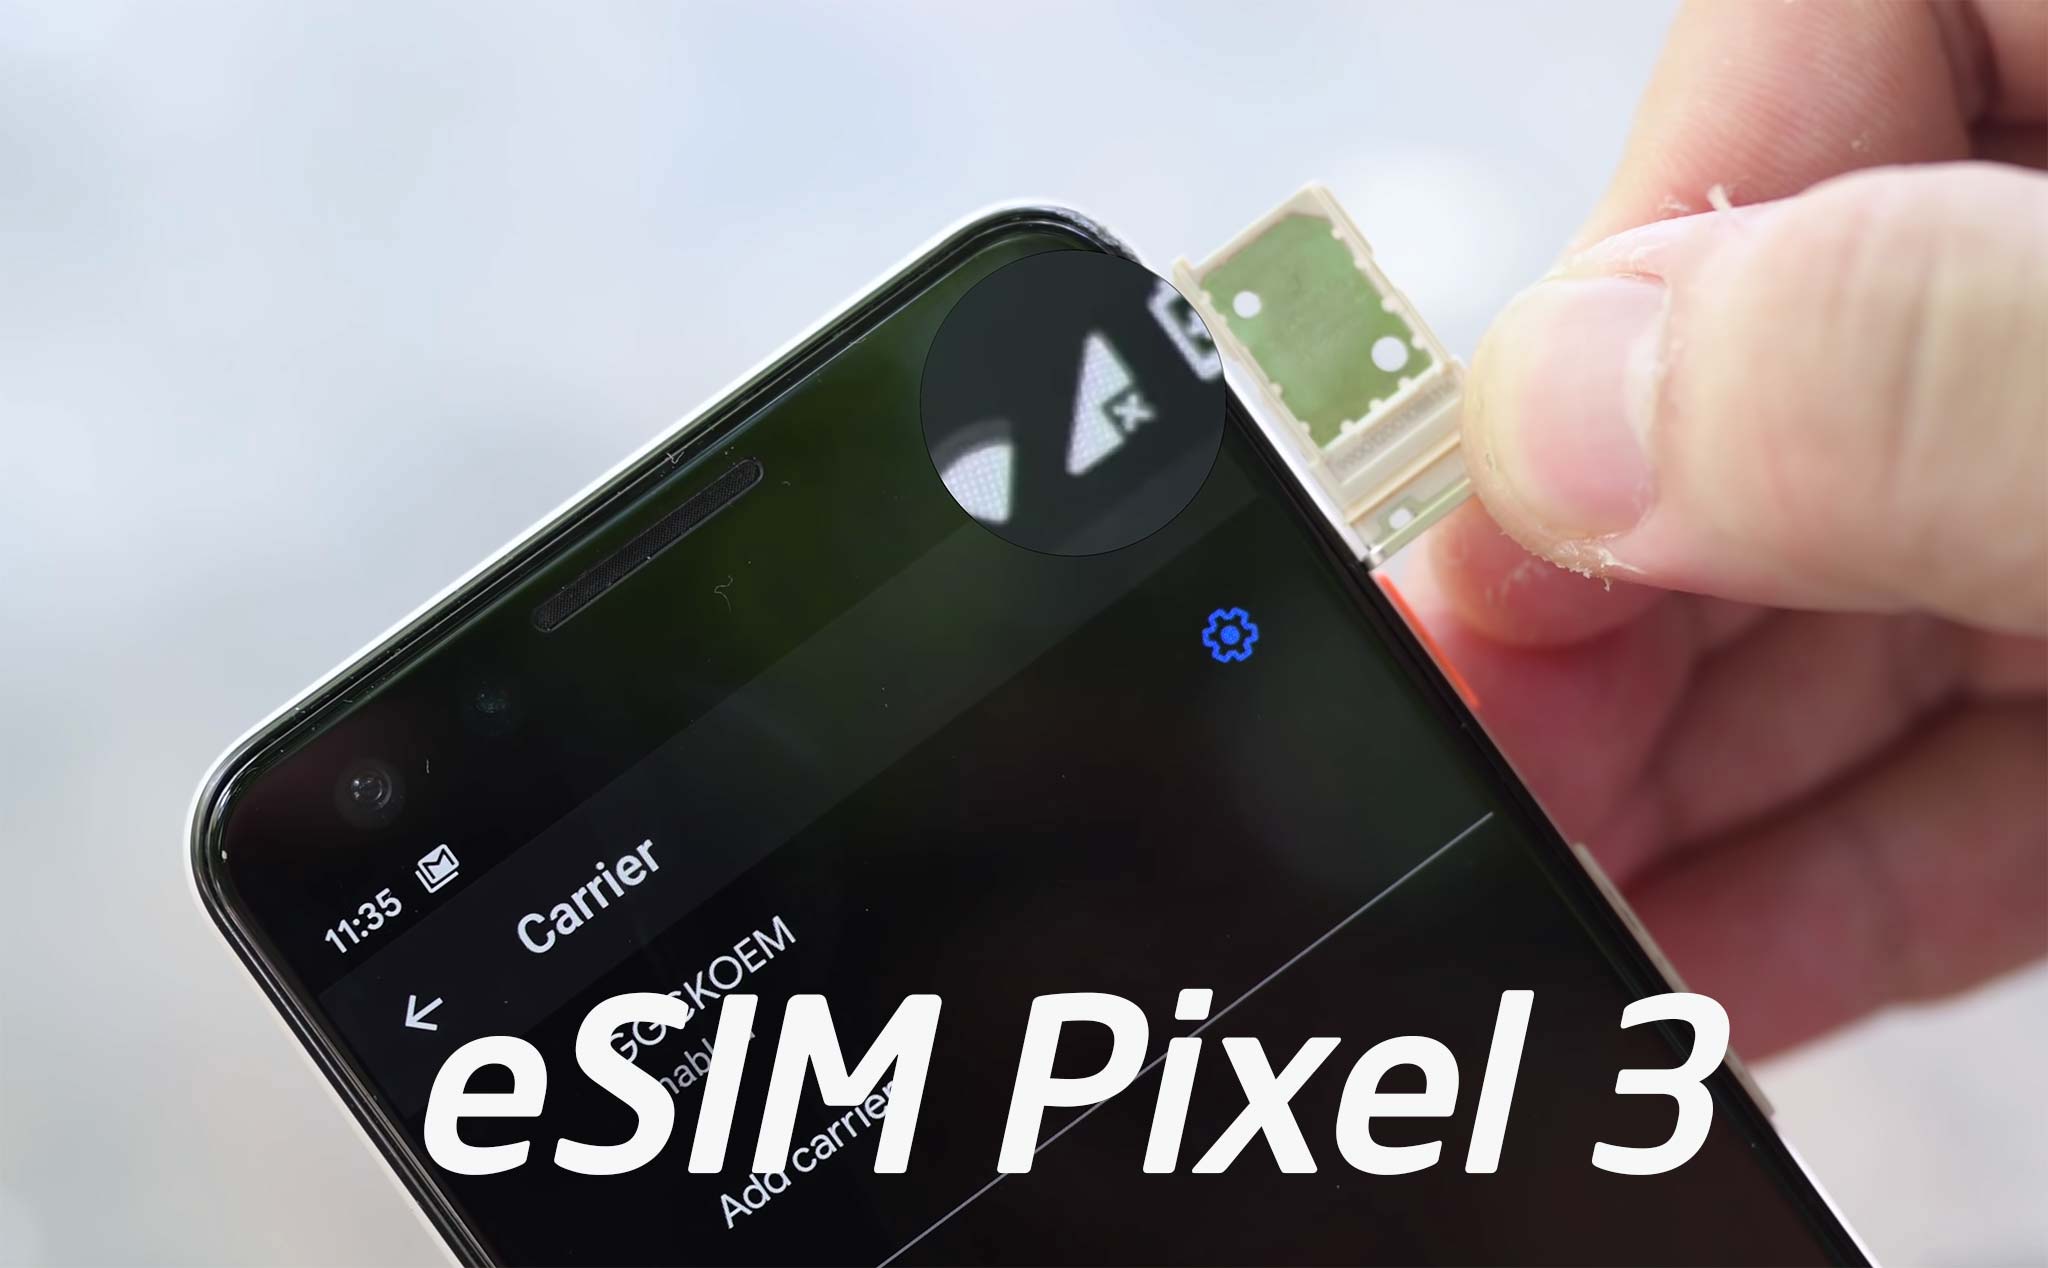 Thử dùng eSIM trên Pixel 3 với nhà mạng Việt Nam: reset máy để add, chưa dùng được 2 SIM cùng lúc